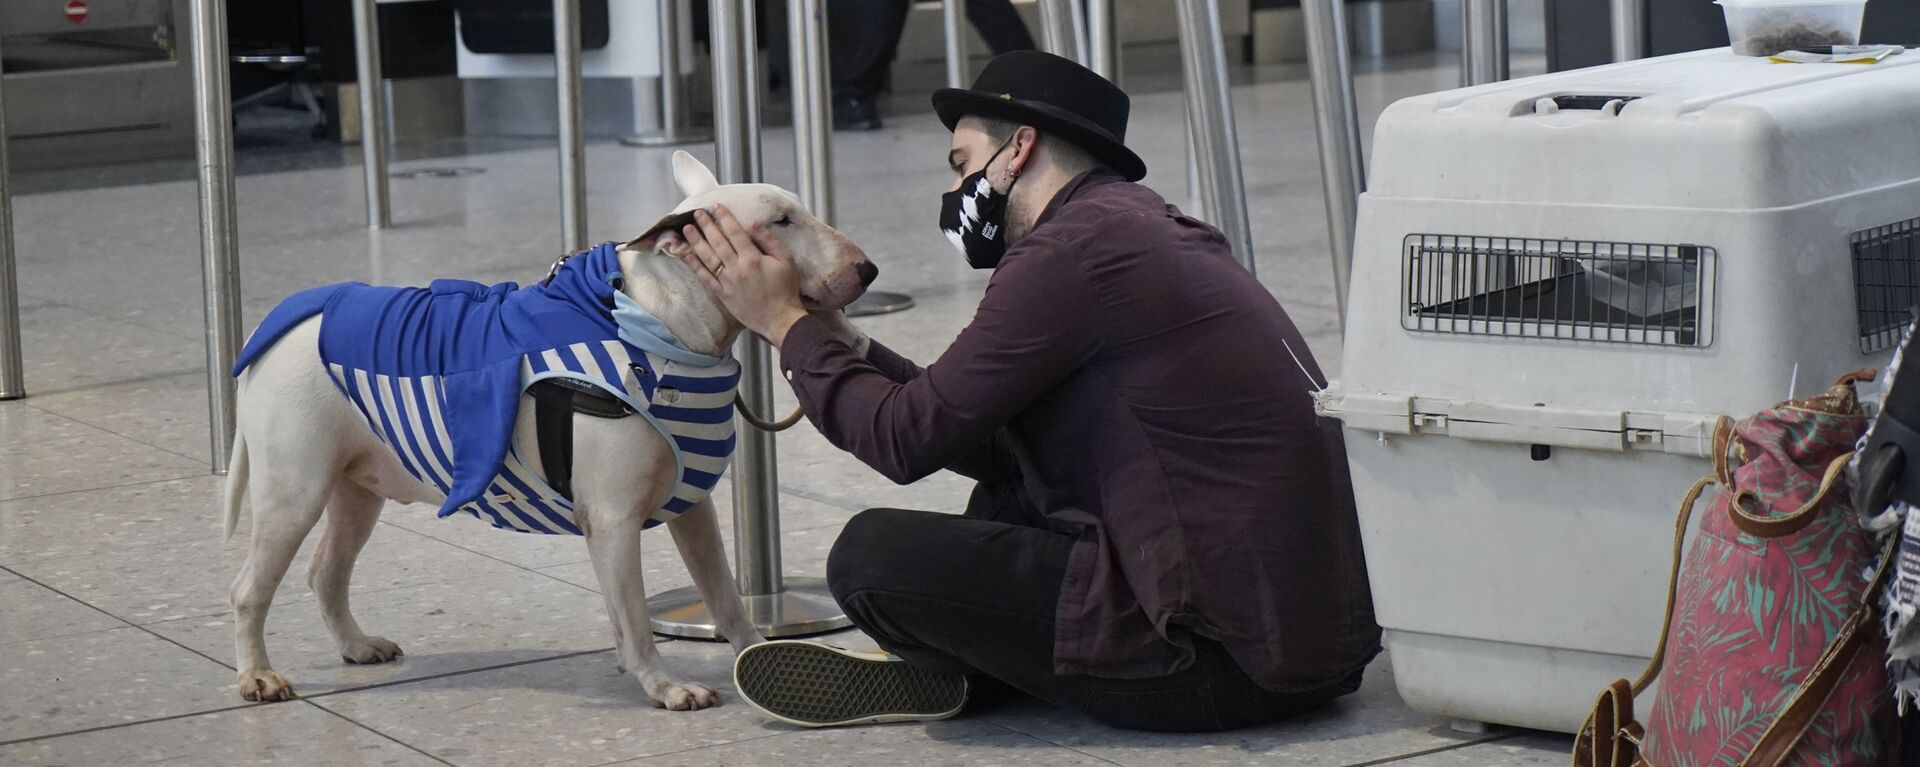 Турист с собакой в терминале 2 аэропорта Хитроу в Лондоне, Великобритания  - Sputnik Узбекистан, 1920, 29.03.2021